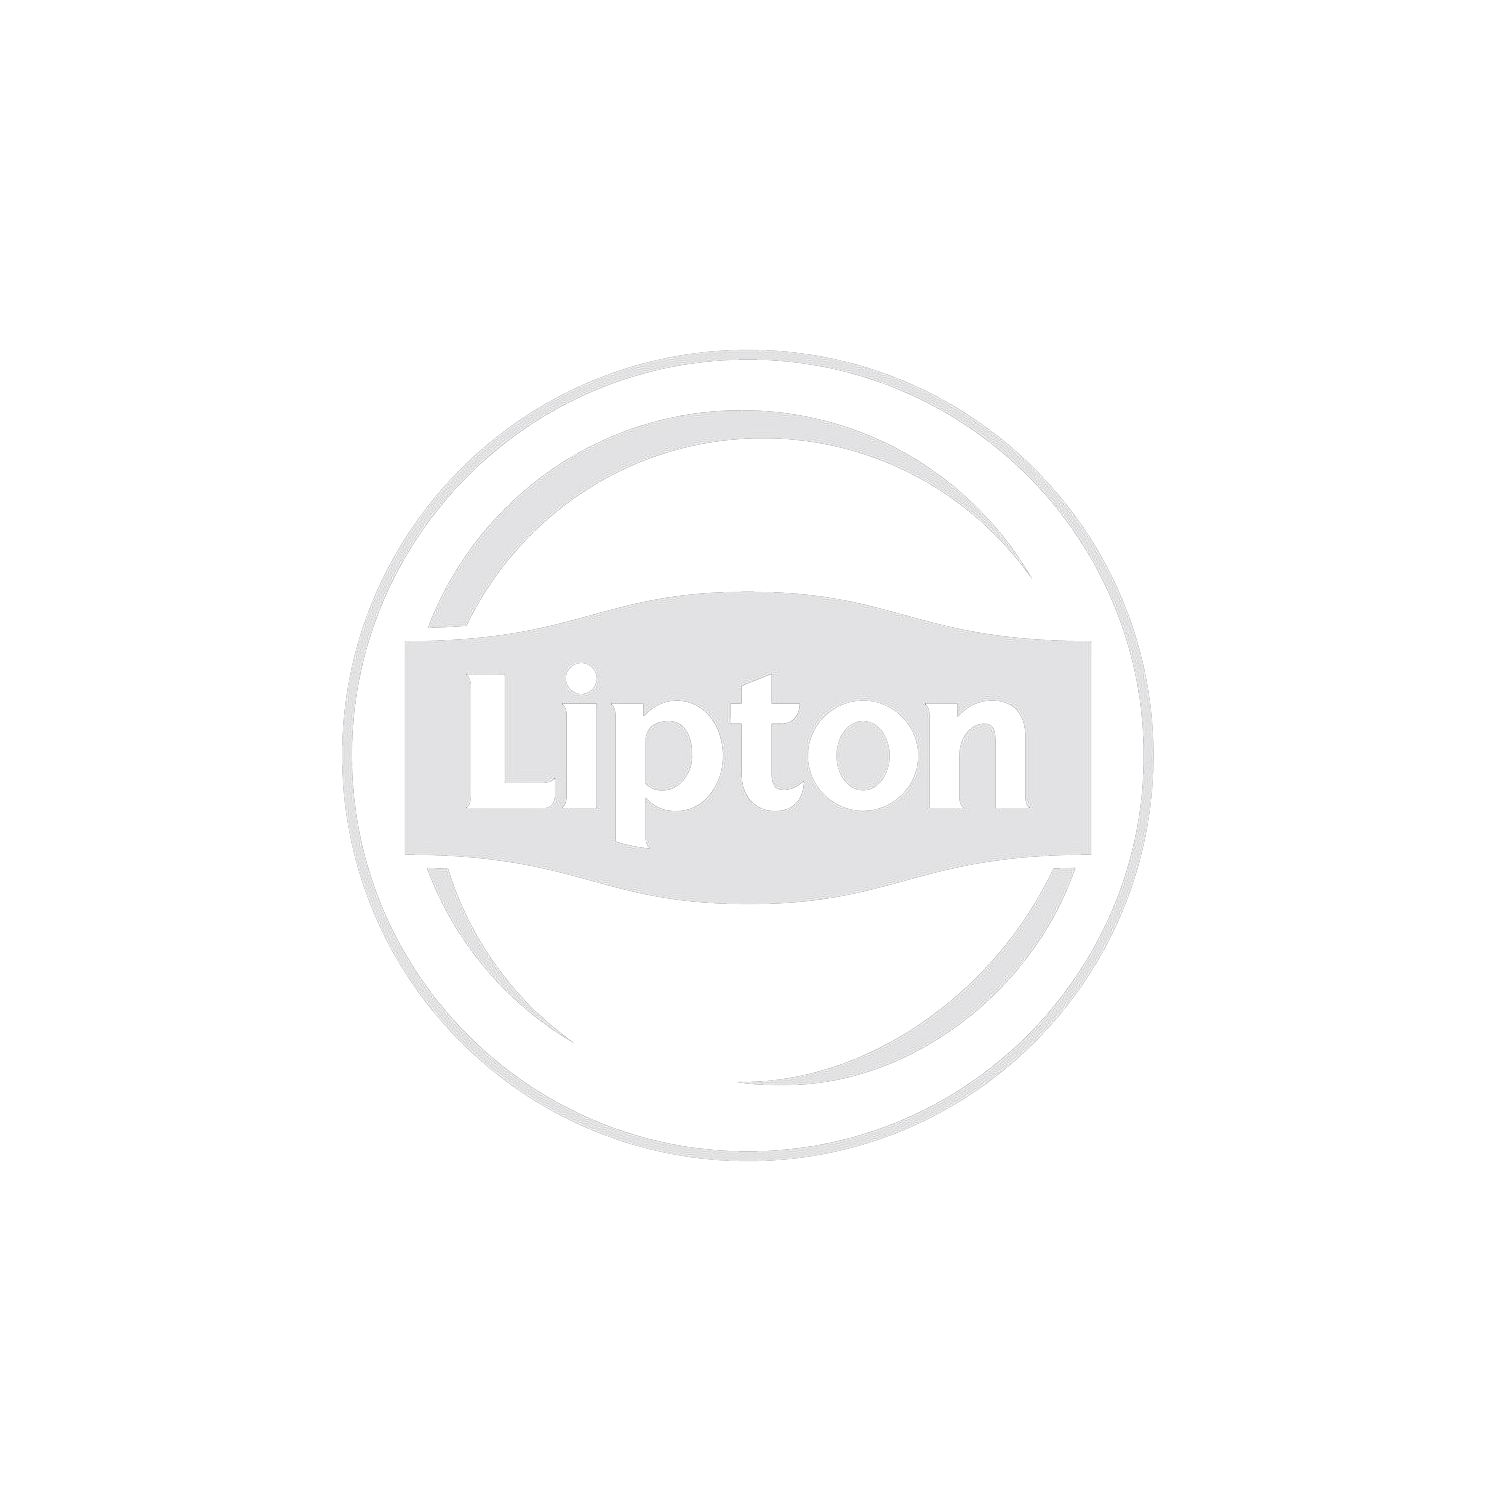 00__0010_Lipton.png